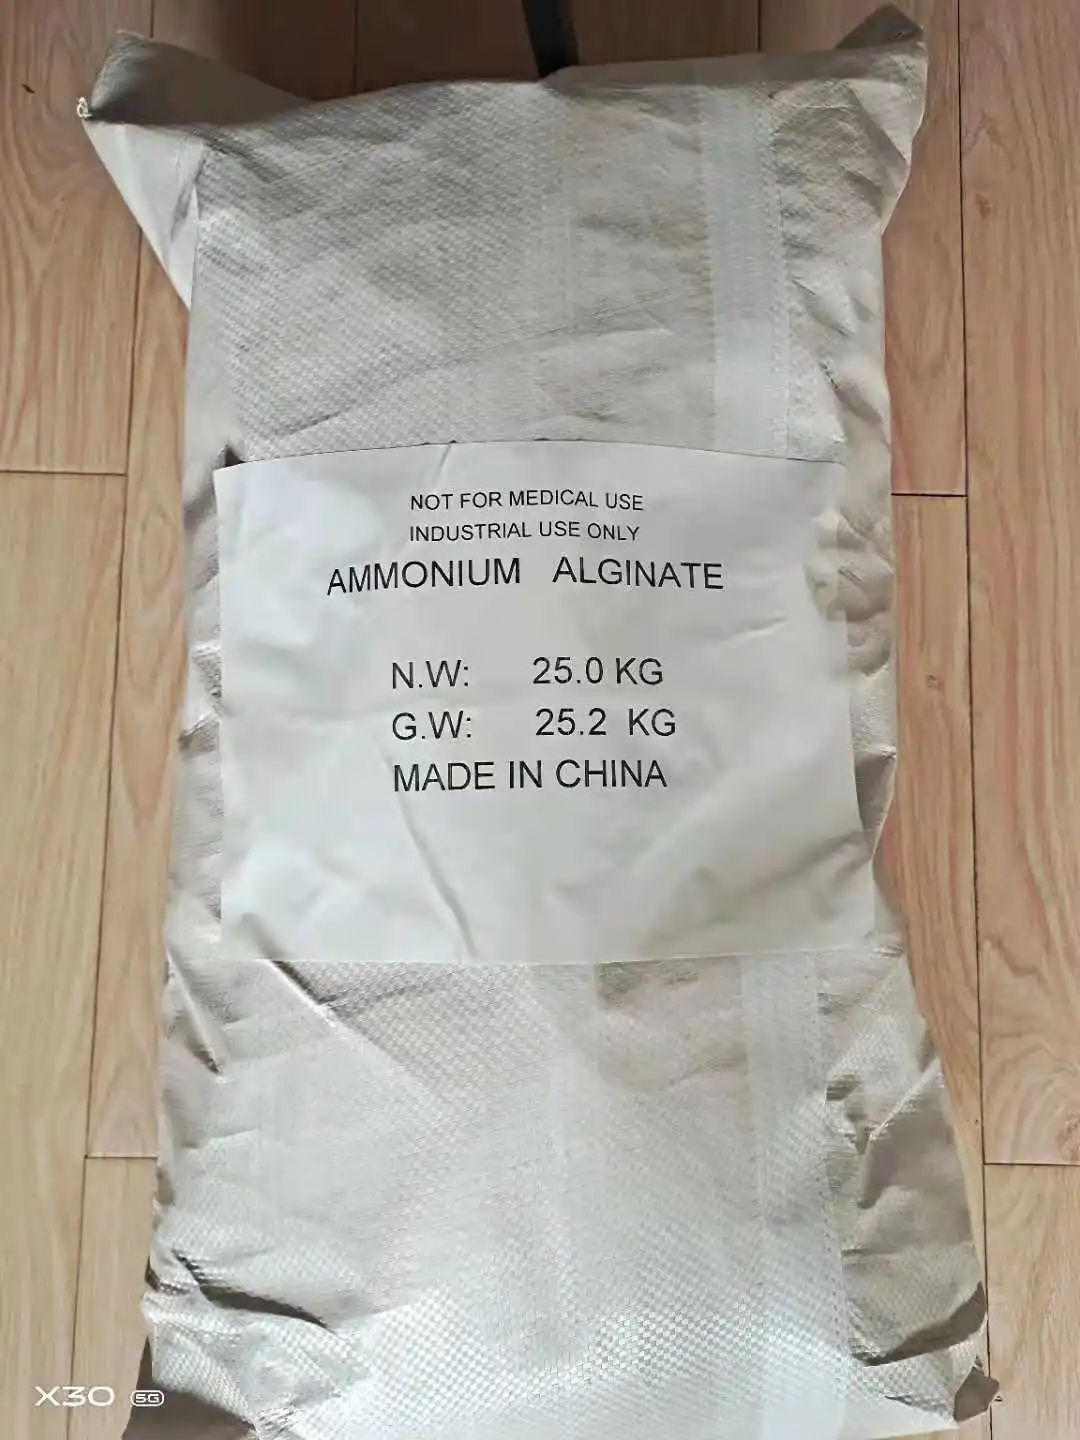 
Ammonium Alginate 